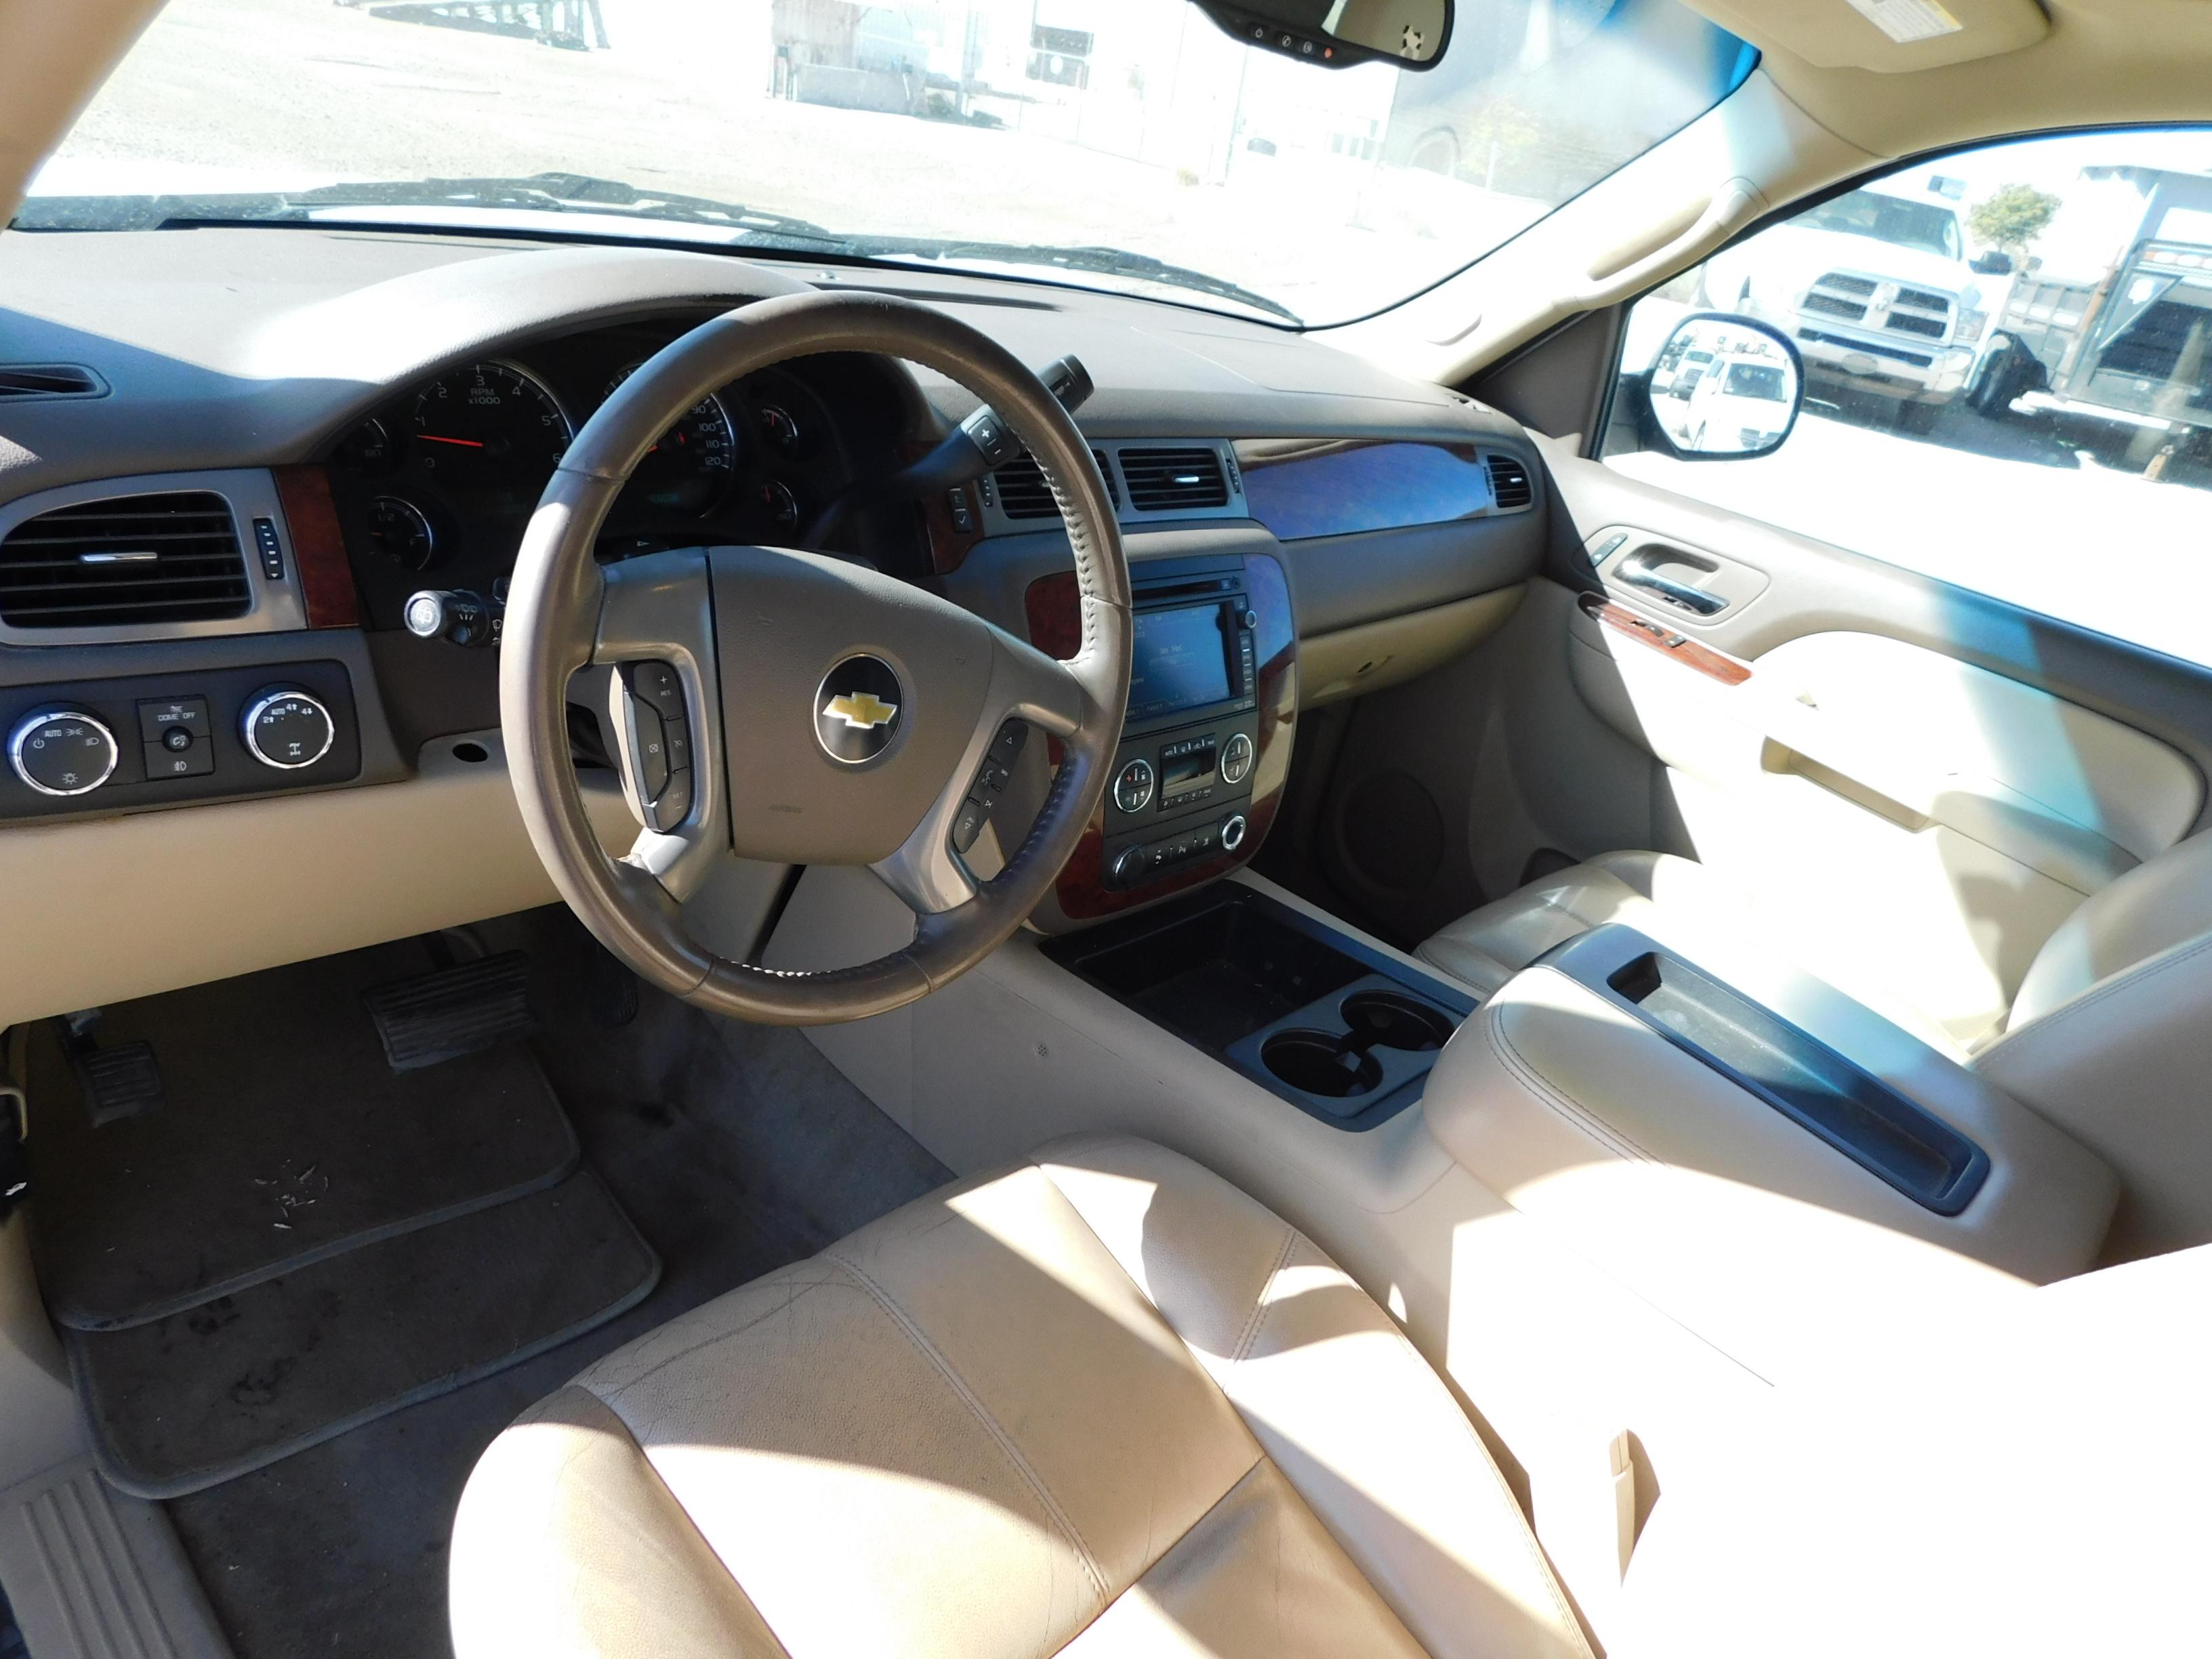 (2011) Chevy Suburban LT, 4-Door SUV, 5.3L